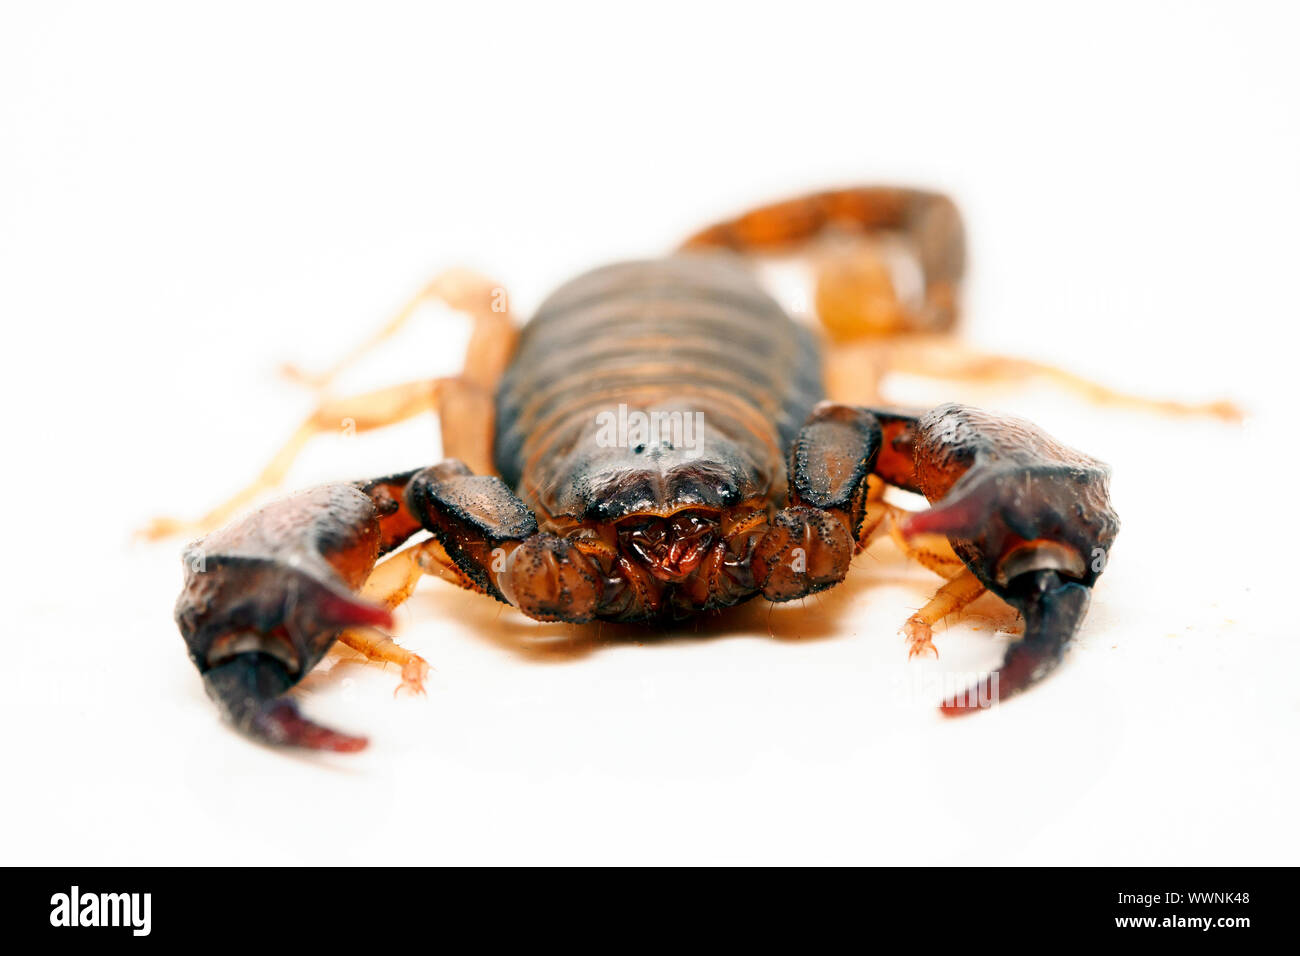 Italian scorpion (Euscorpius italicus) Stock Photo